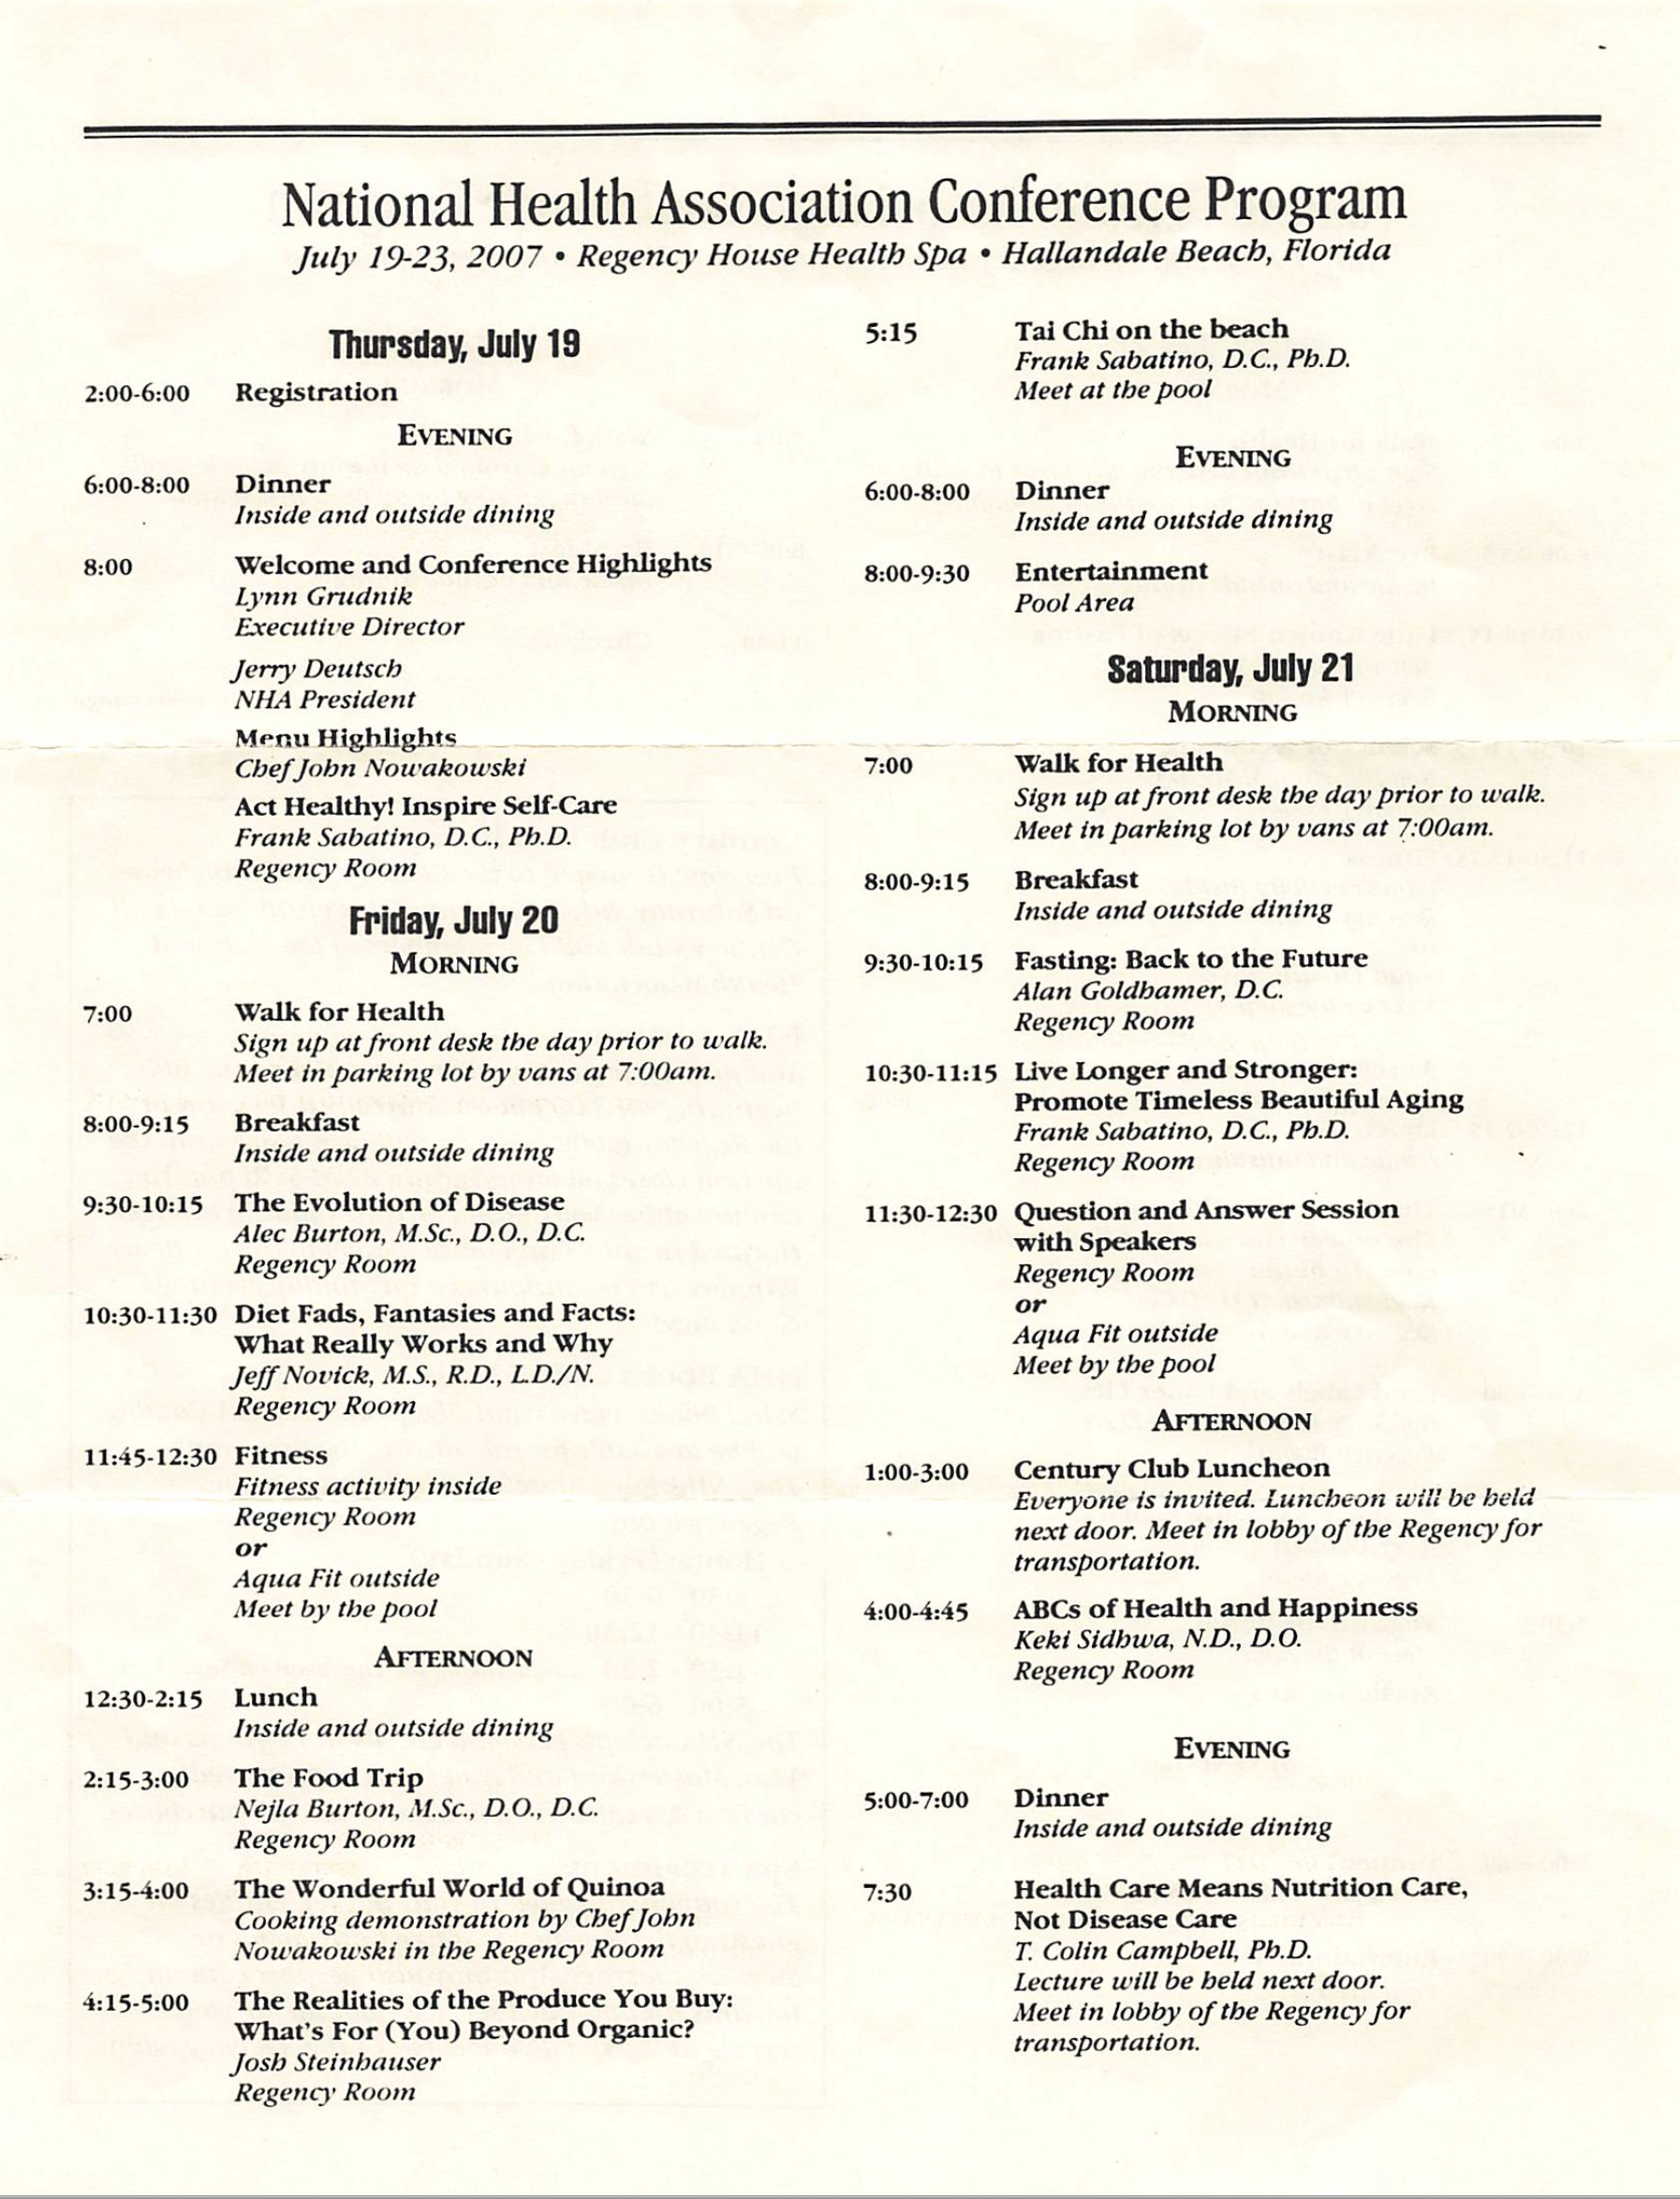 Conference Program. Hallandale, 2007